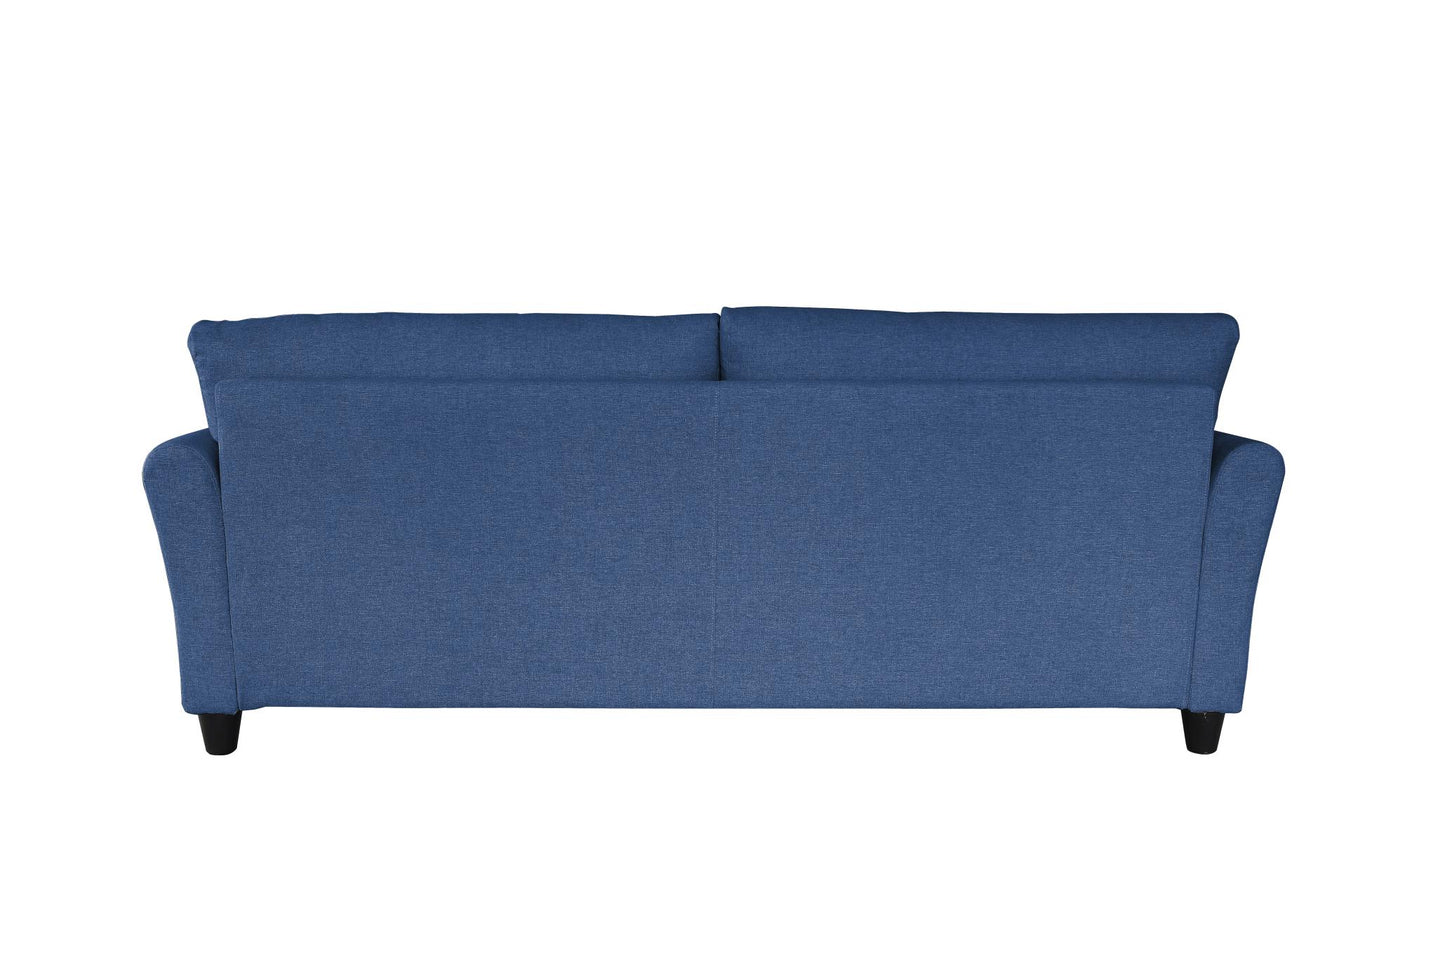 Linen sofa with 2 Pillows